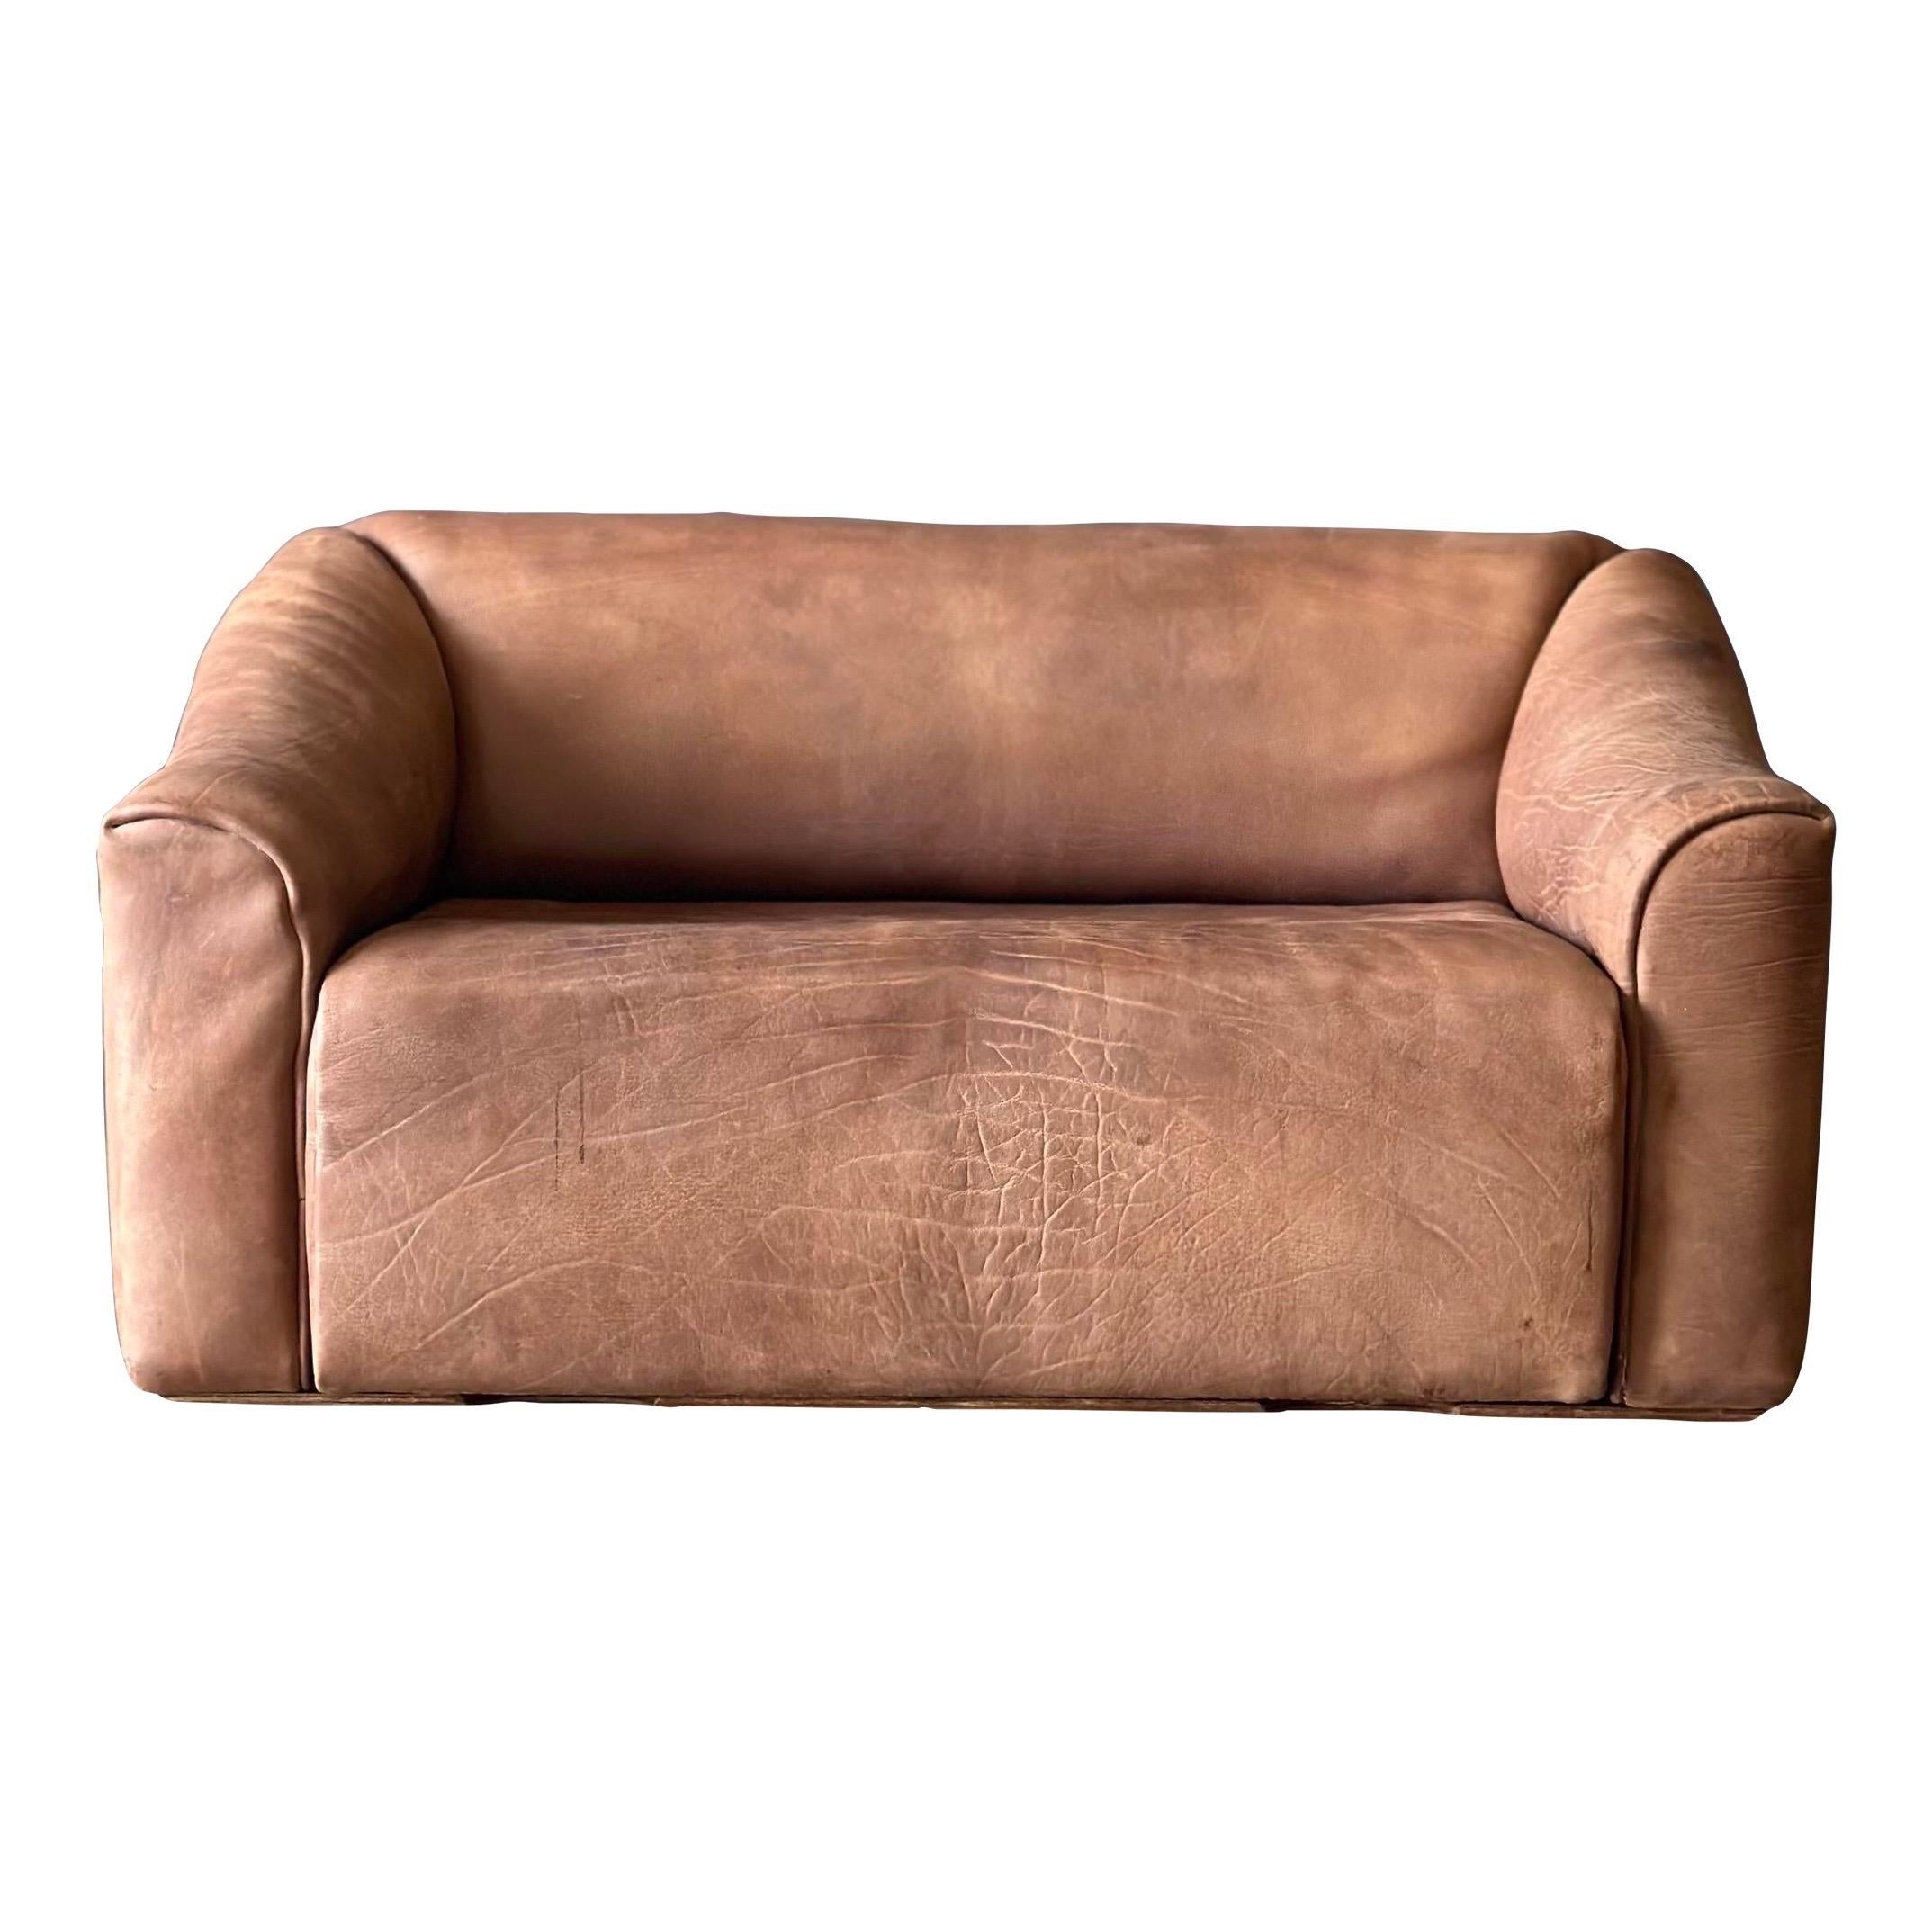 De Sede D S - 47 Buffalo Leather Loveseat Sofa For Sale